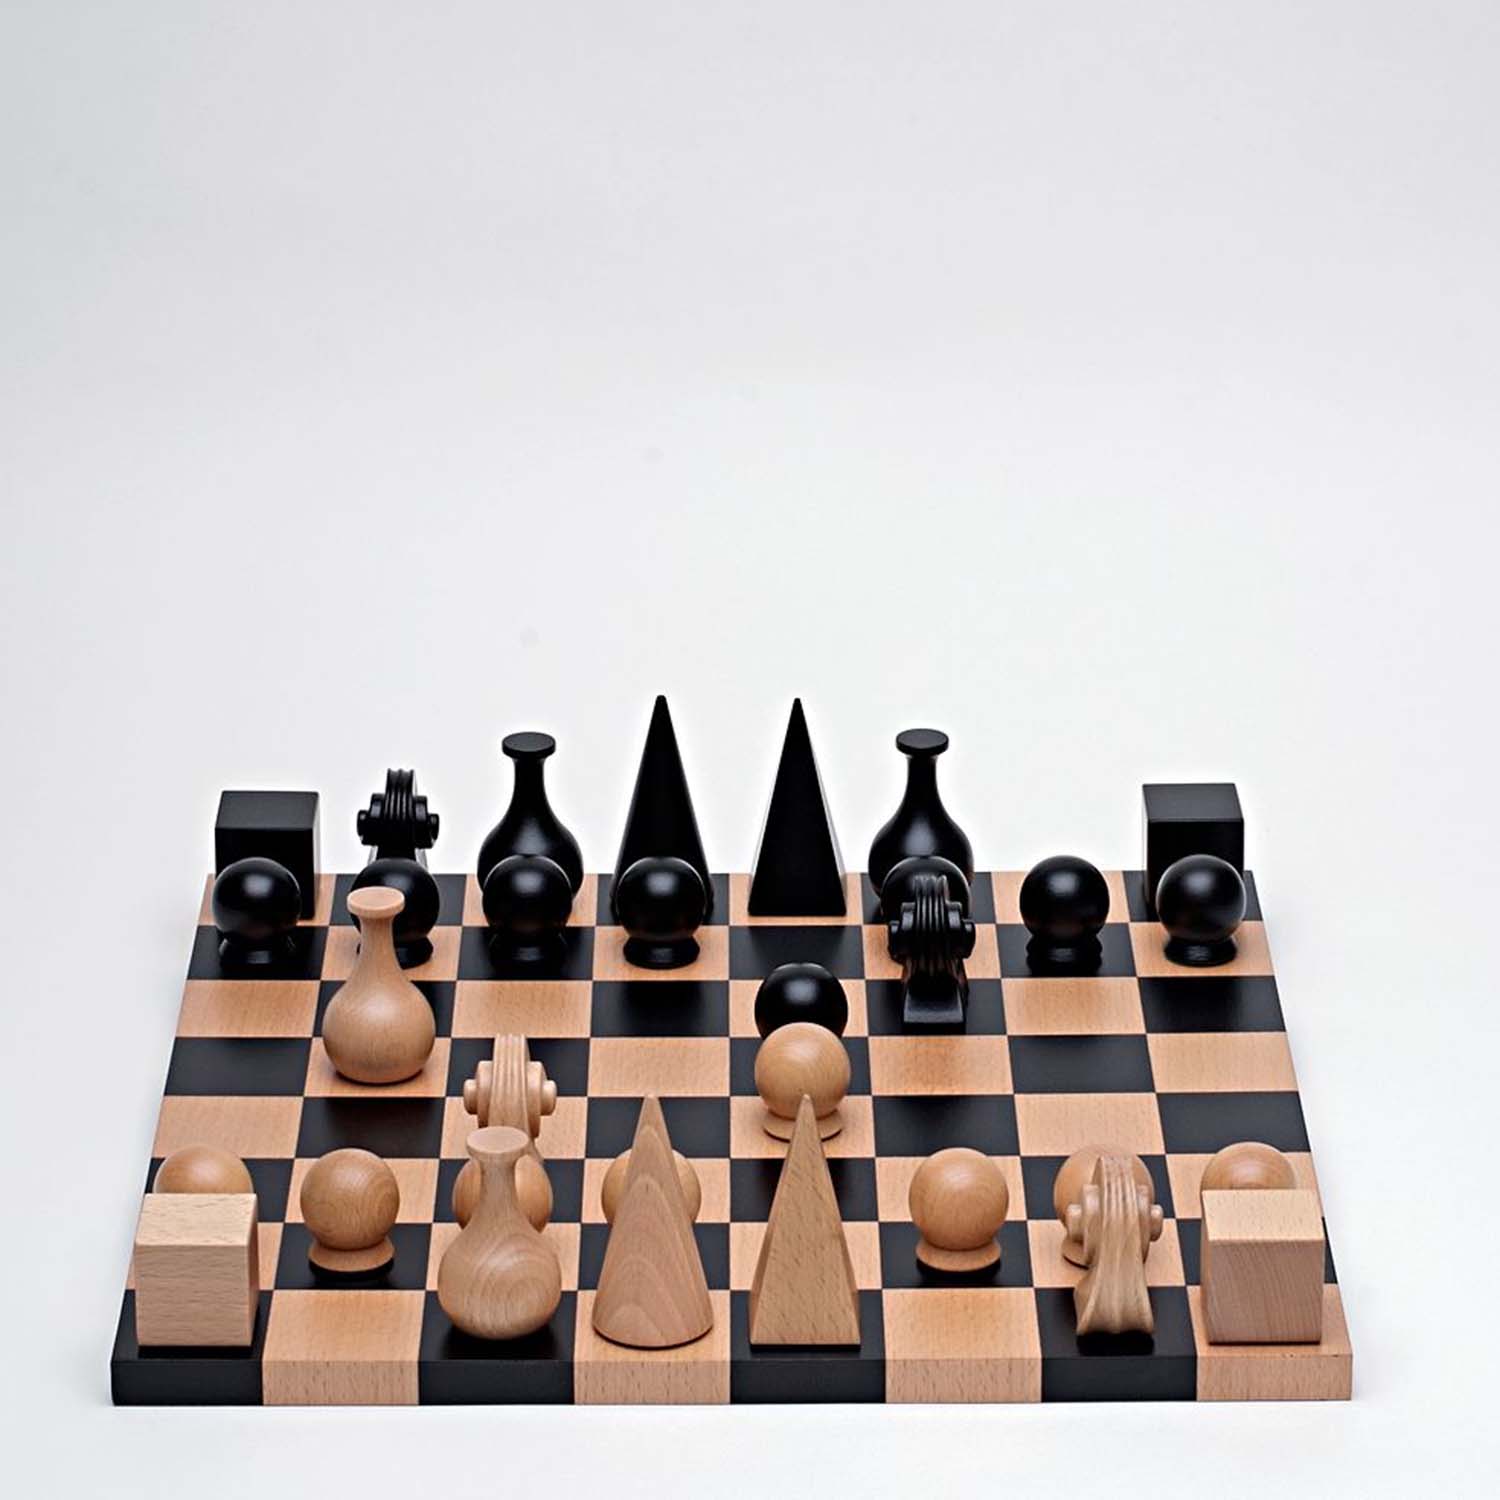 曼雷国际象棋组的图片
